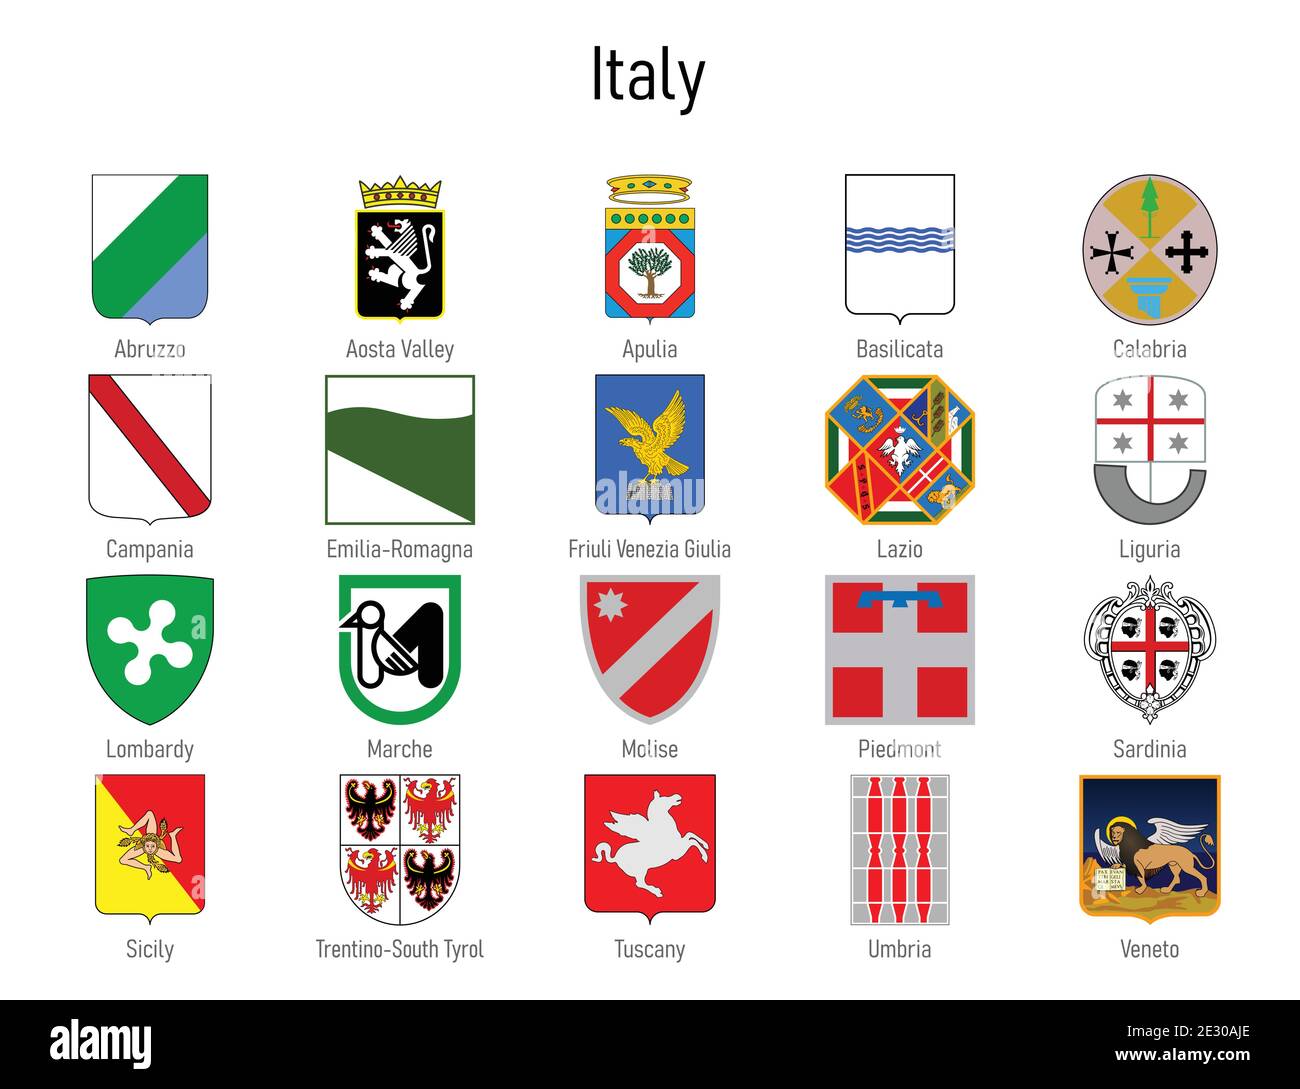 Stemma dello stato d'Italia, collezione emblema di tutte le regioni italiane  Immagine e Vettoriale - Alamy